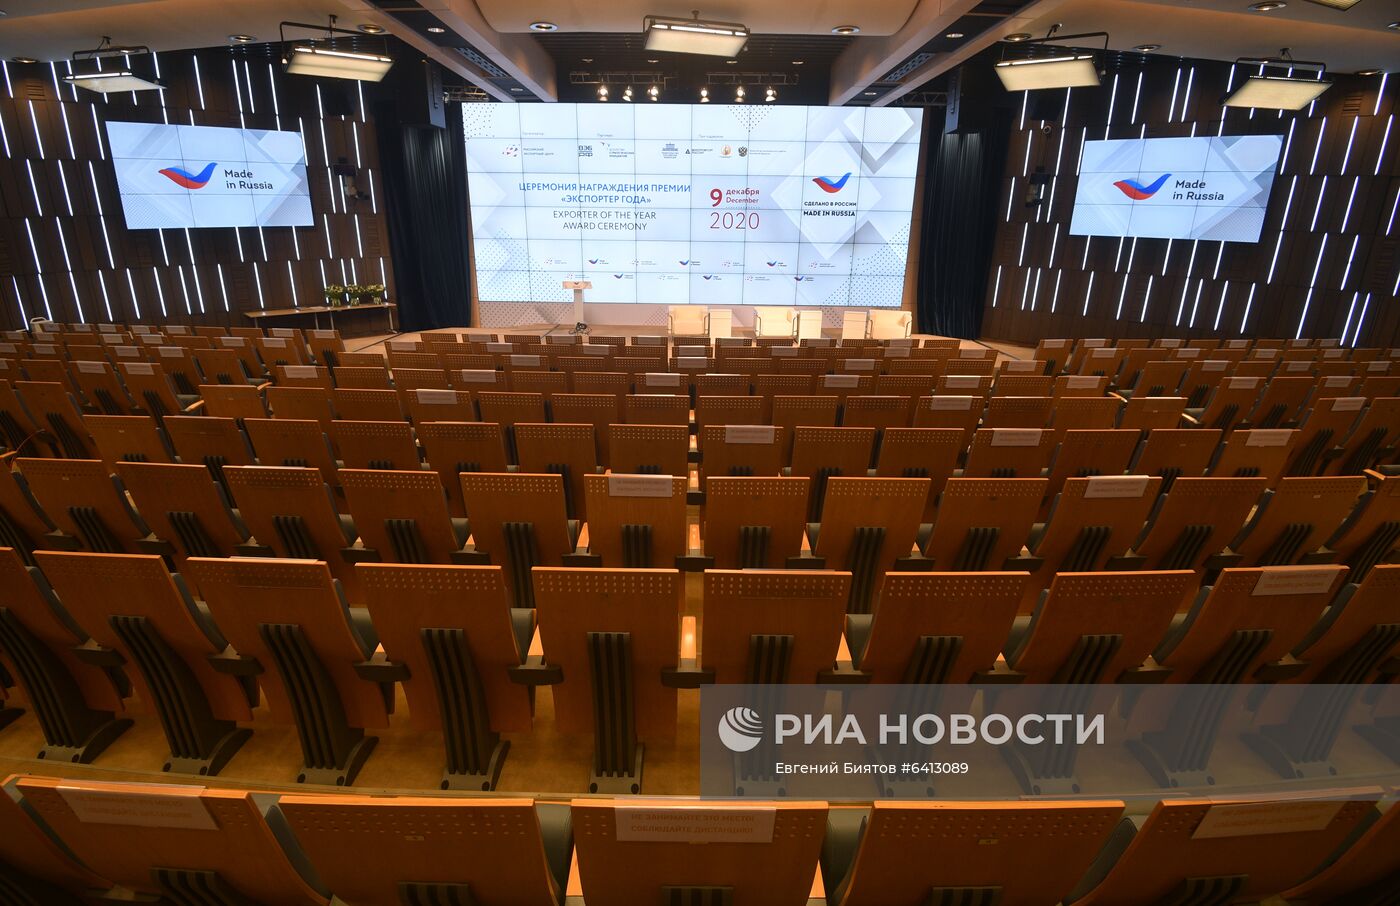 Международный форум "Сделано в России"